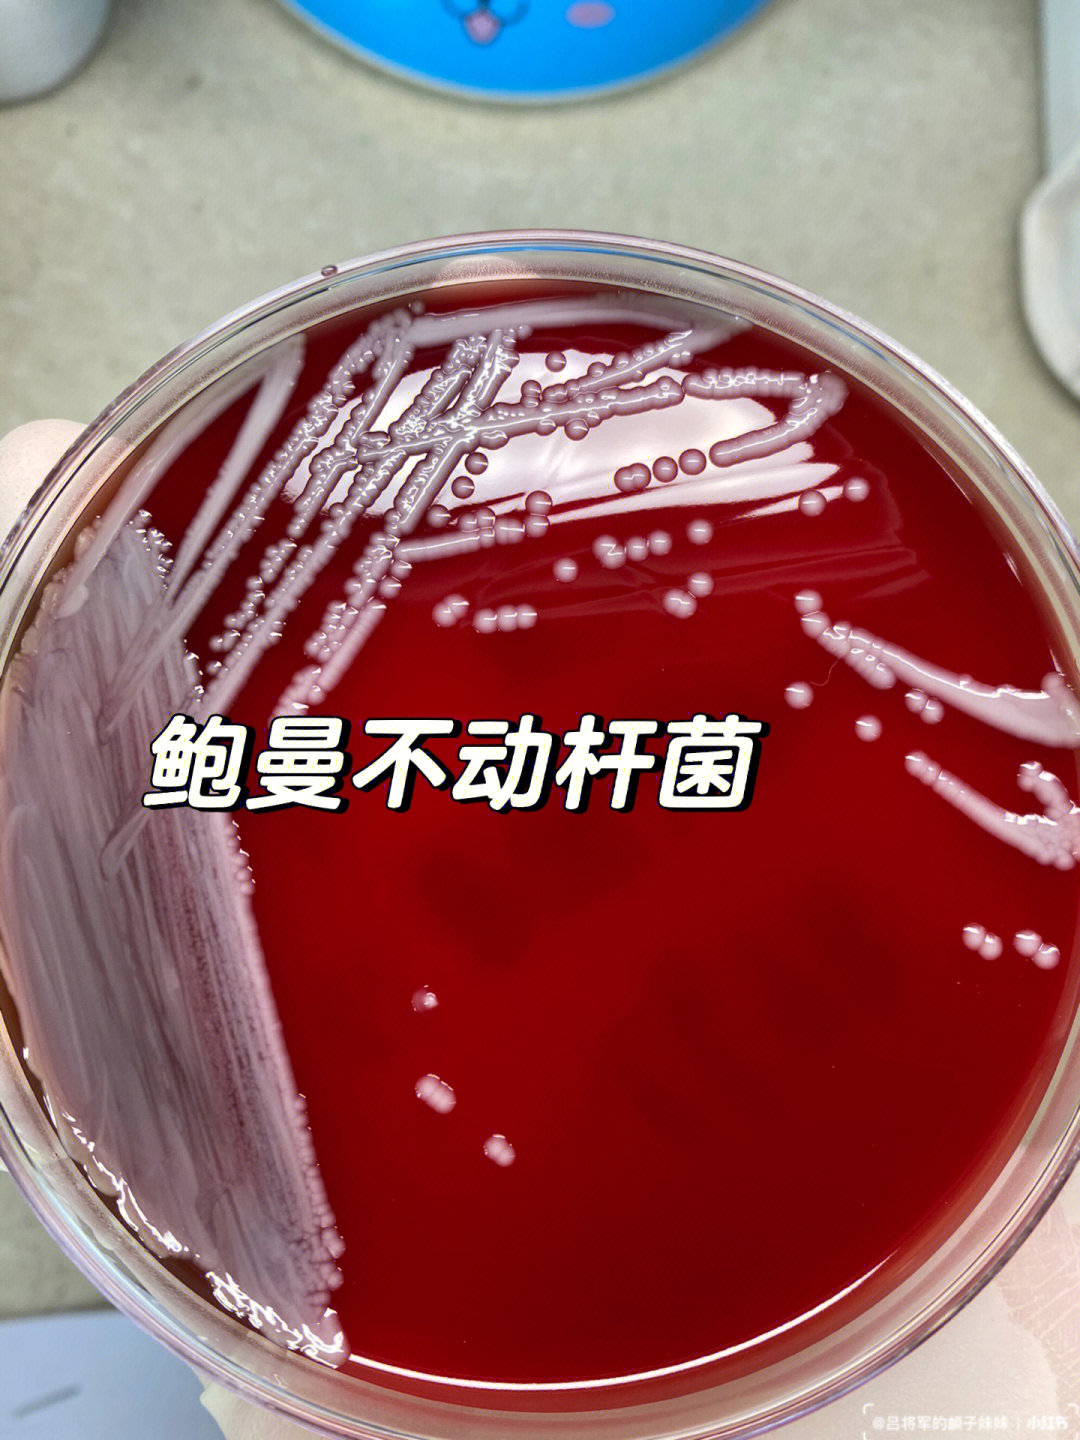 16615形态:革兰阴性球杆菌,大小(1~15)μm × (15~2